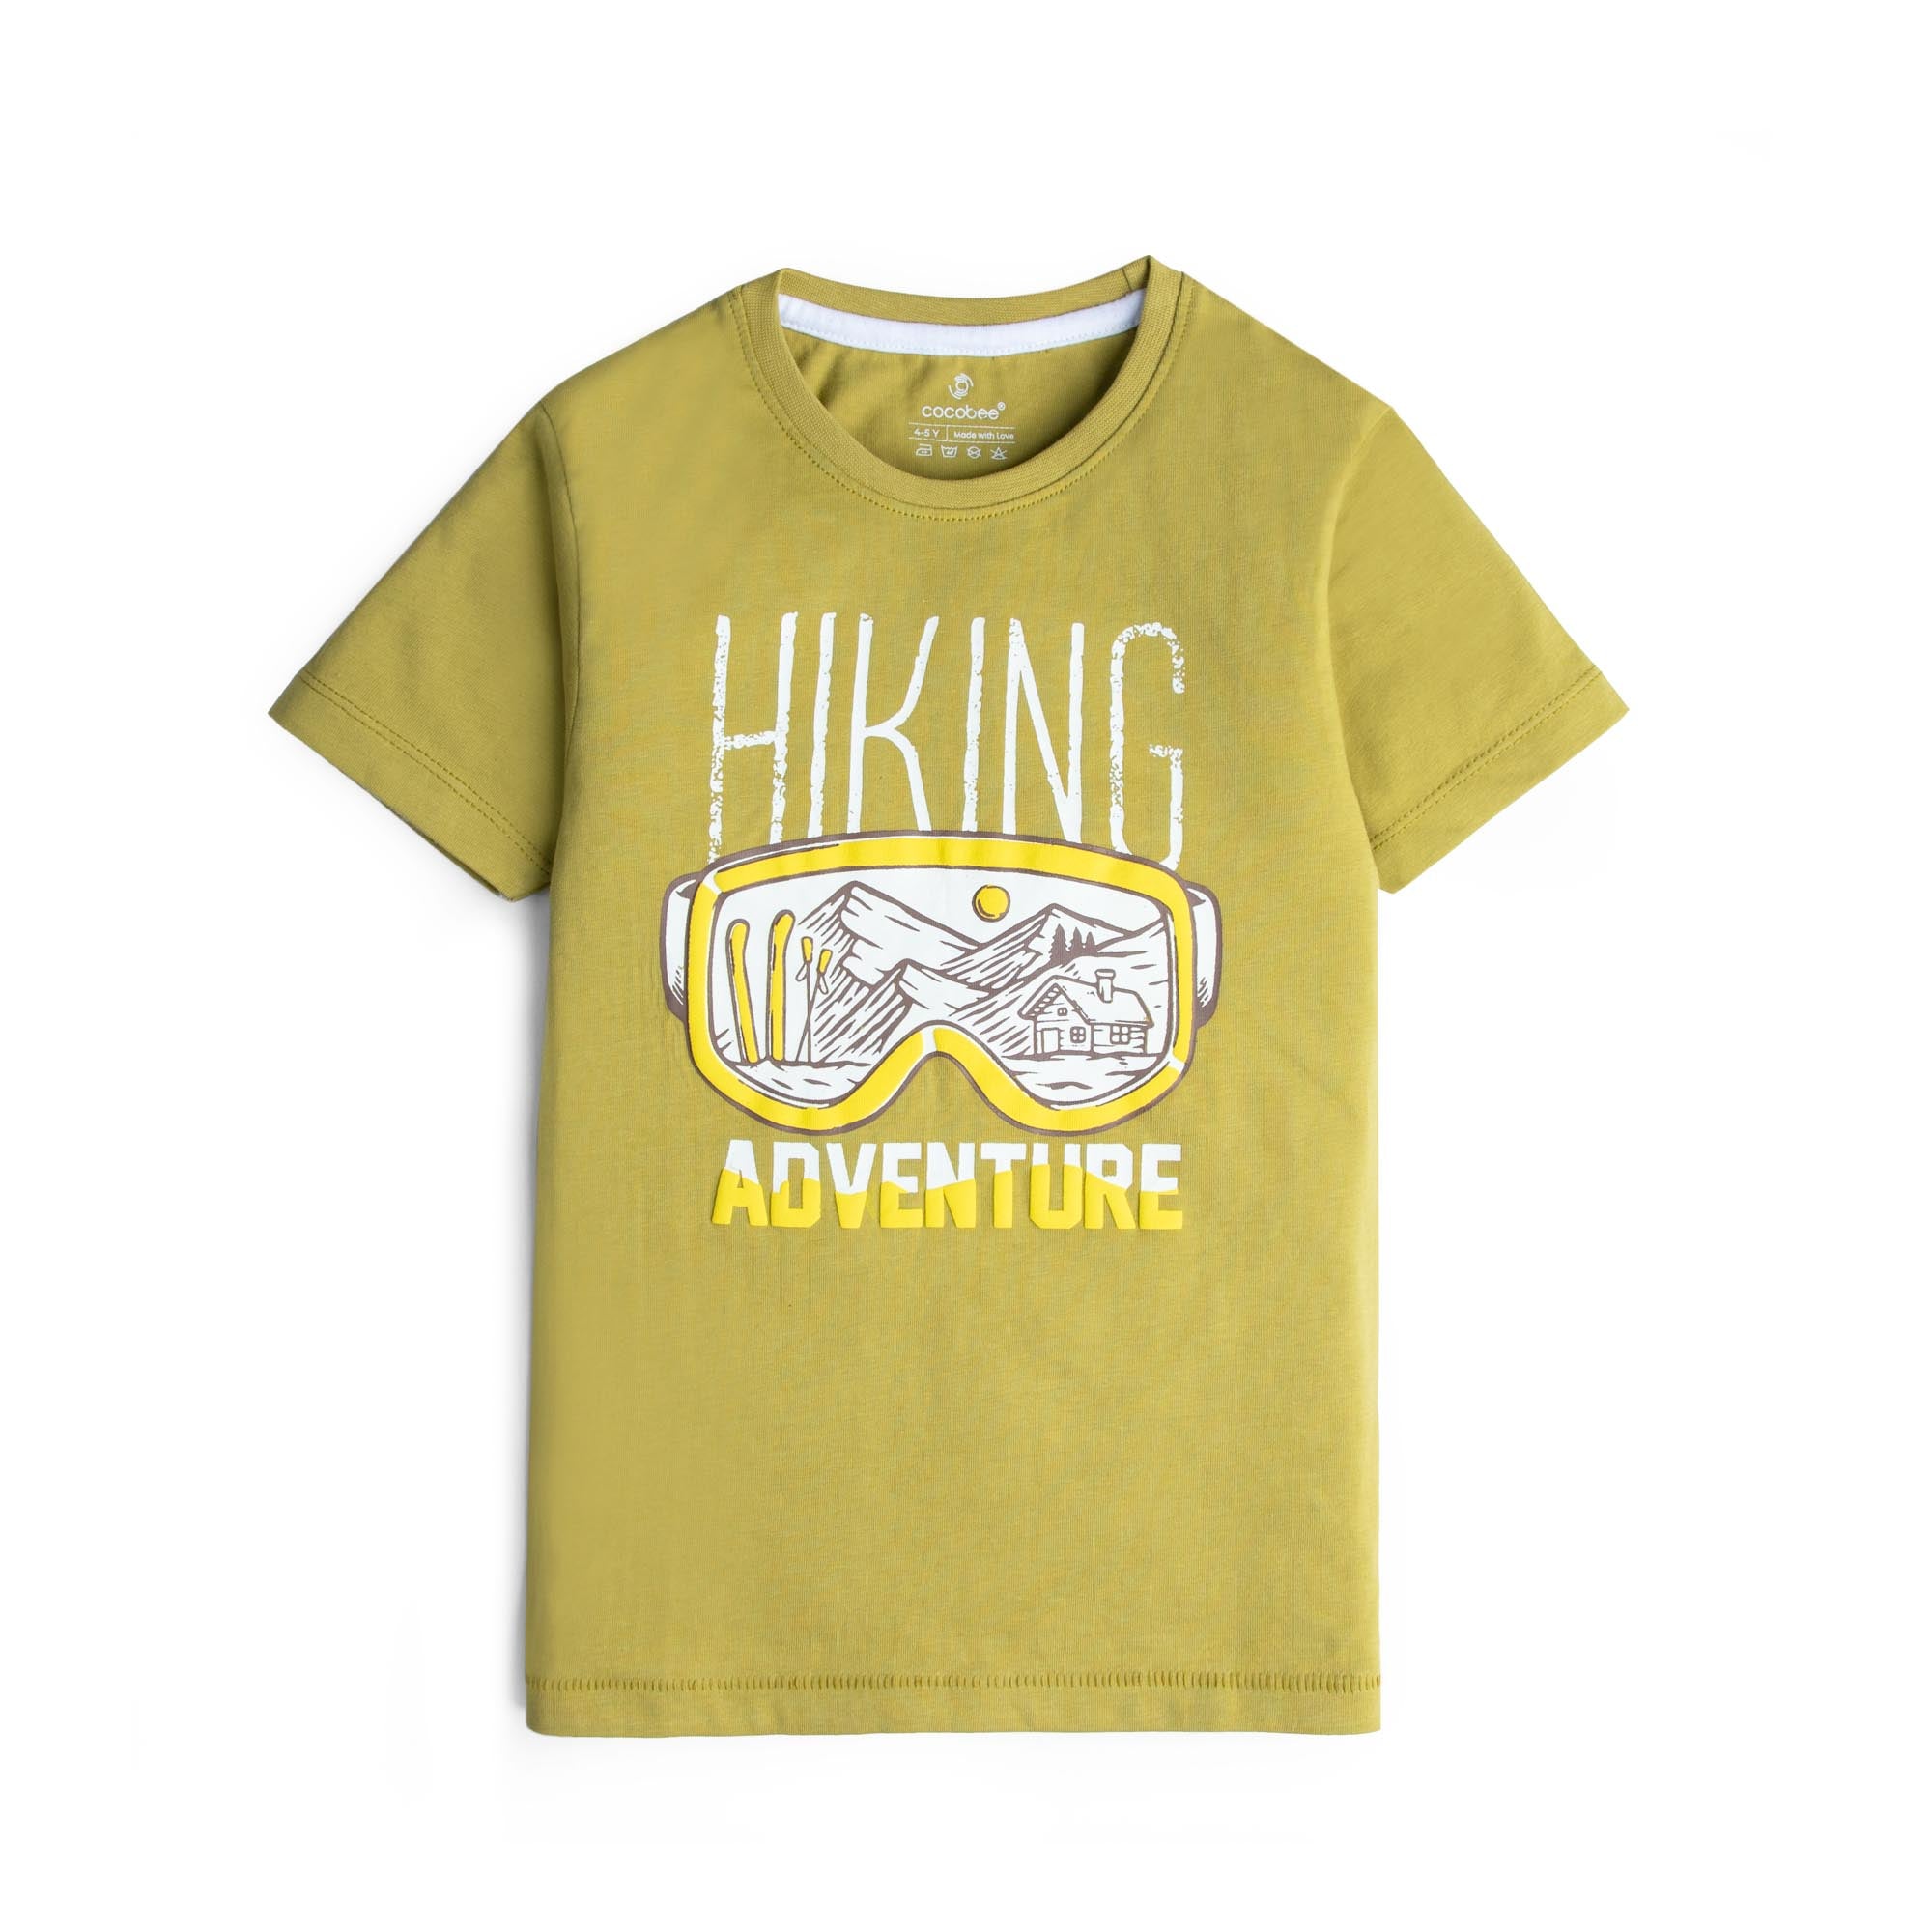 Adventurer Olive T-shirt